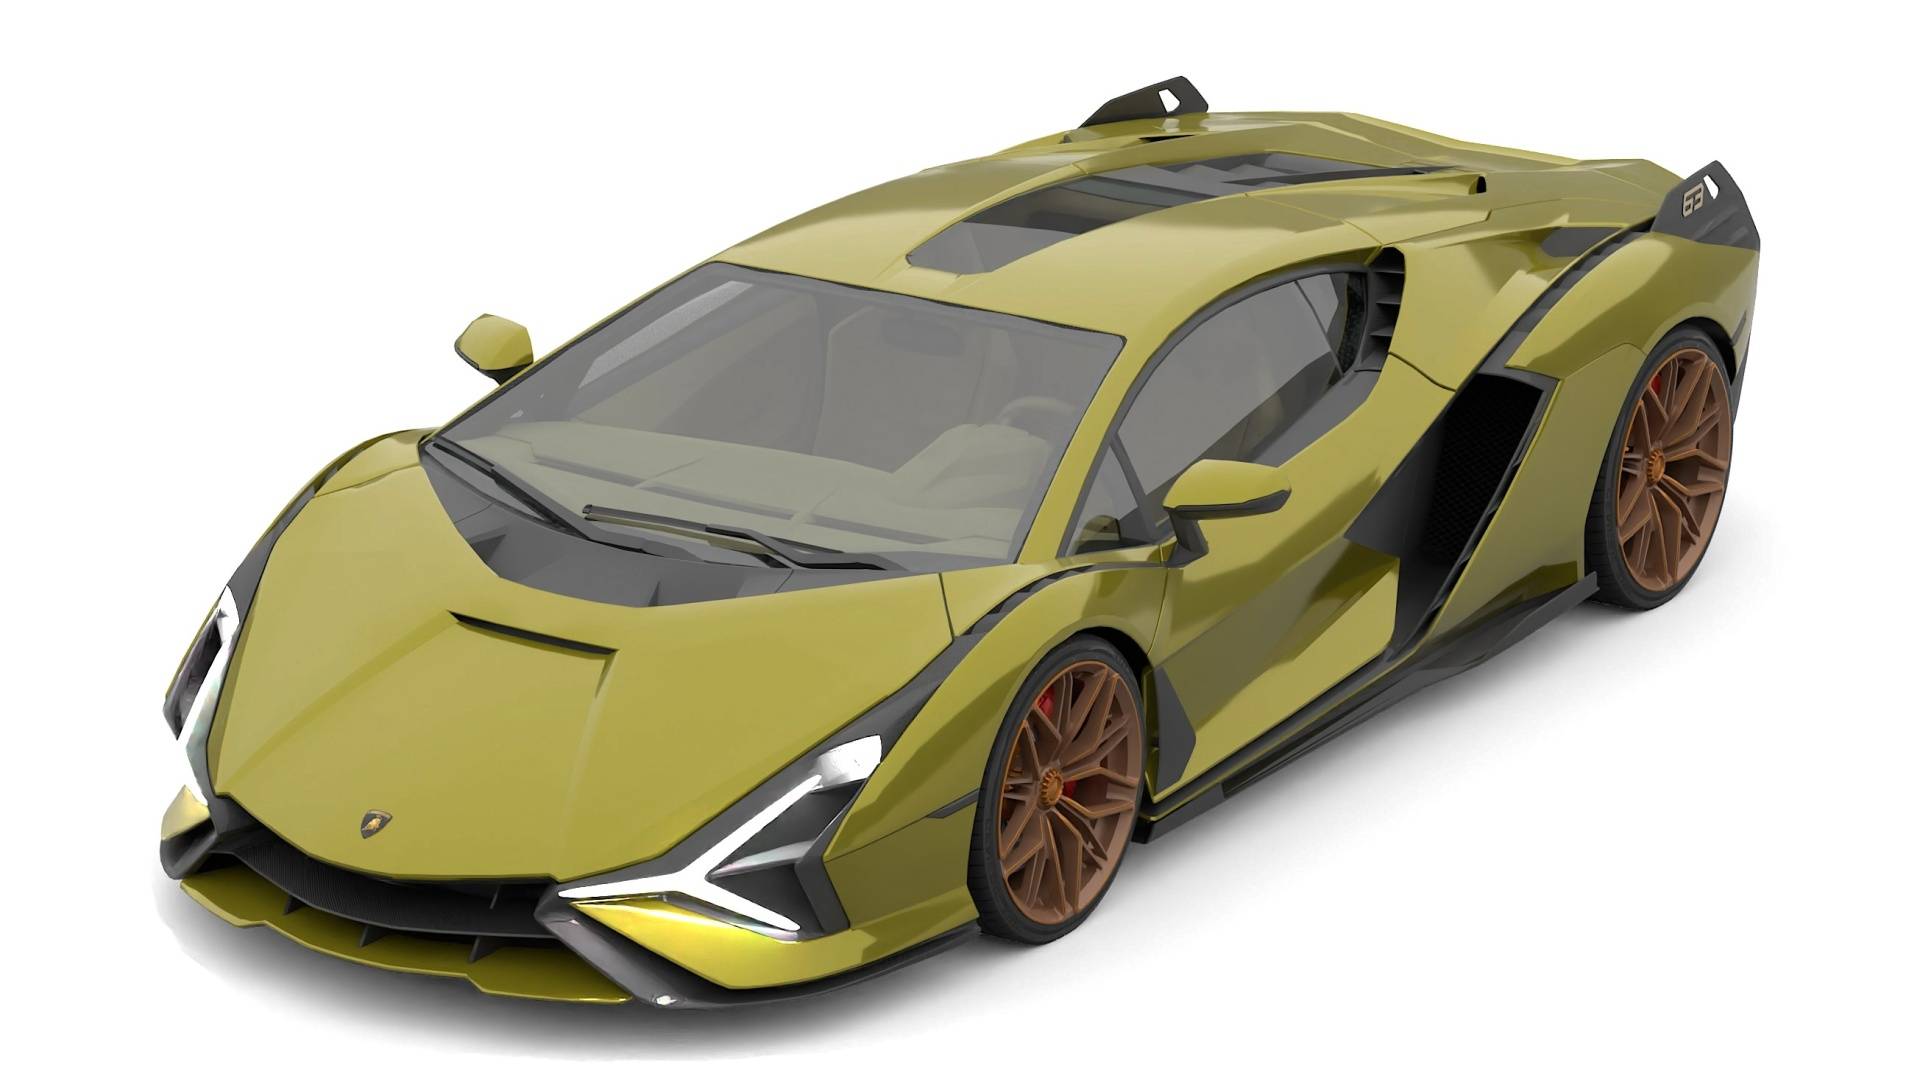 Lamborghini SiÁN Fkp 37 Blender 3D Car model